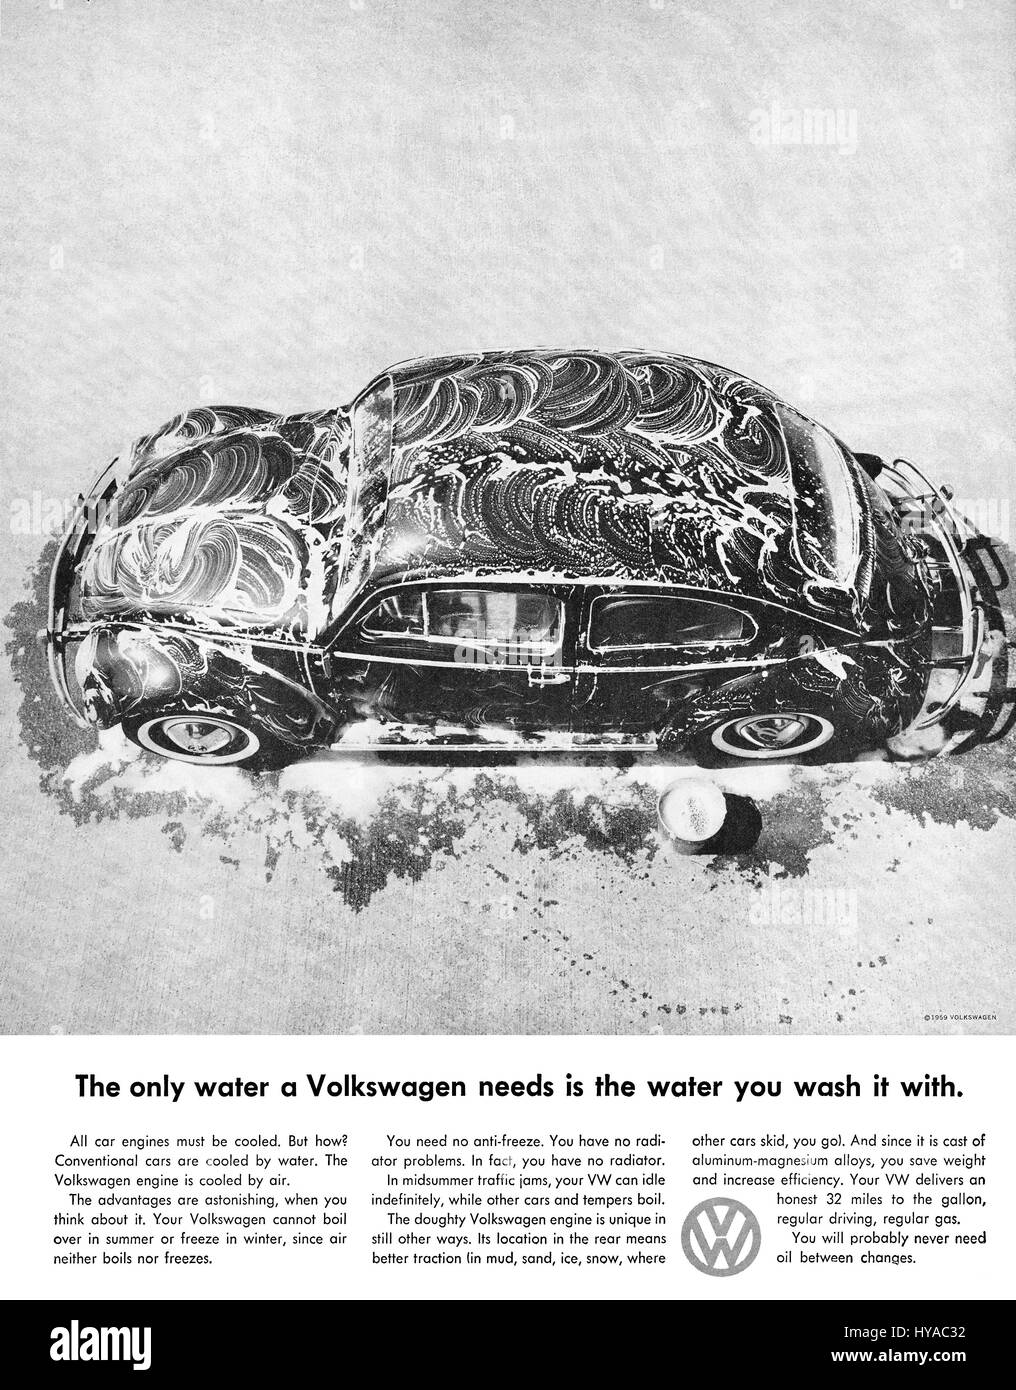 1959 U.S. advertisement for the Volkswagen Beetle. Stock Photo